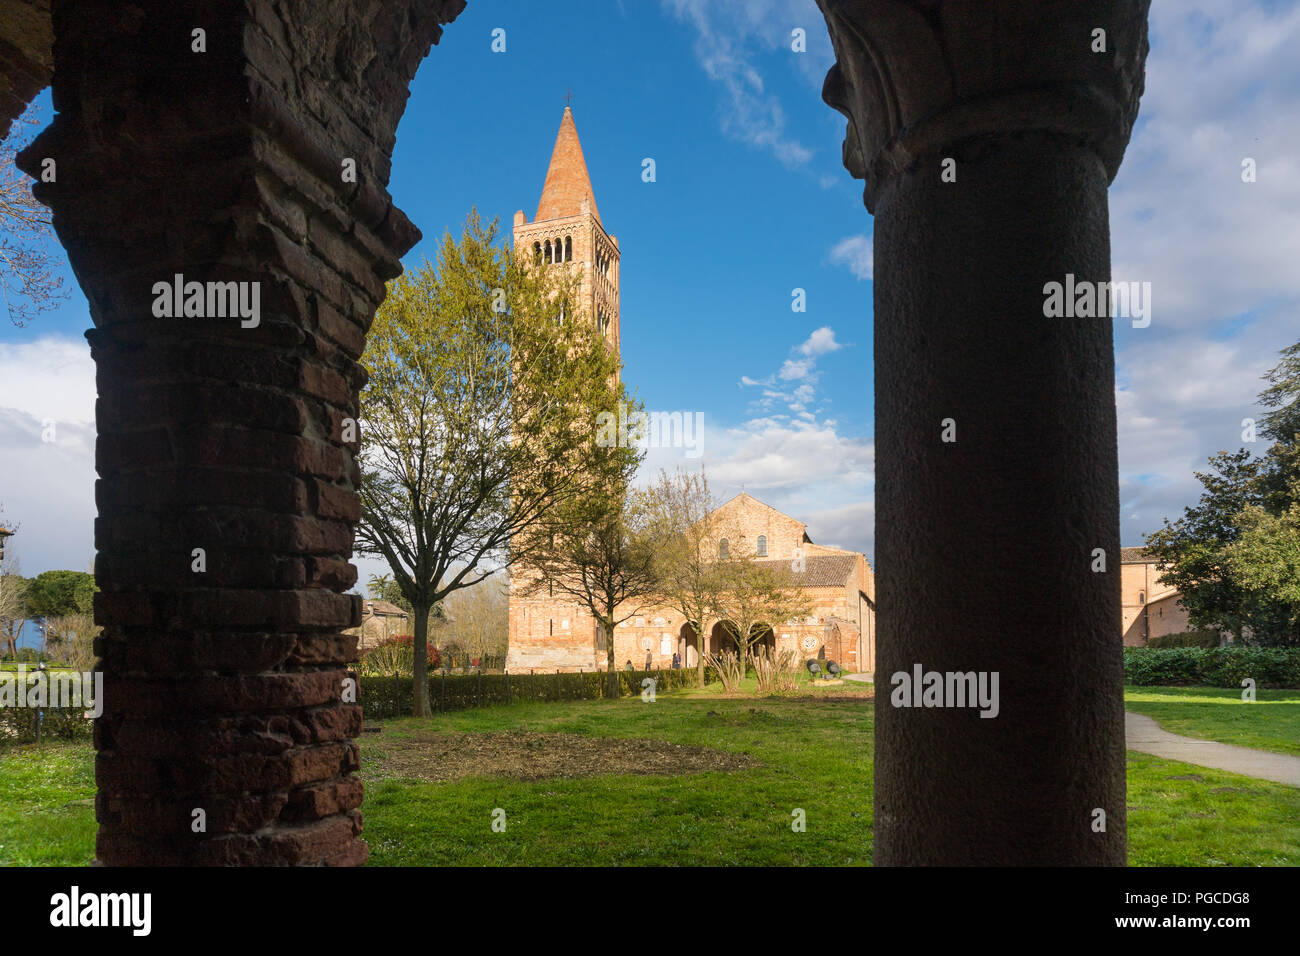 Pomposa,Italie-mars 31,2018:personnes admirer l'ancienne abbaye de Pomposa italien au cours d'une journée ensoleillée Banque D'Images